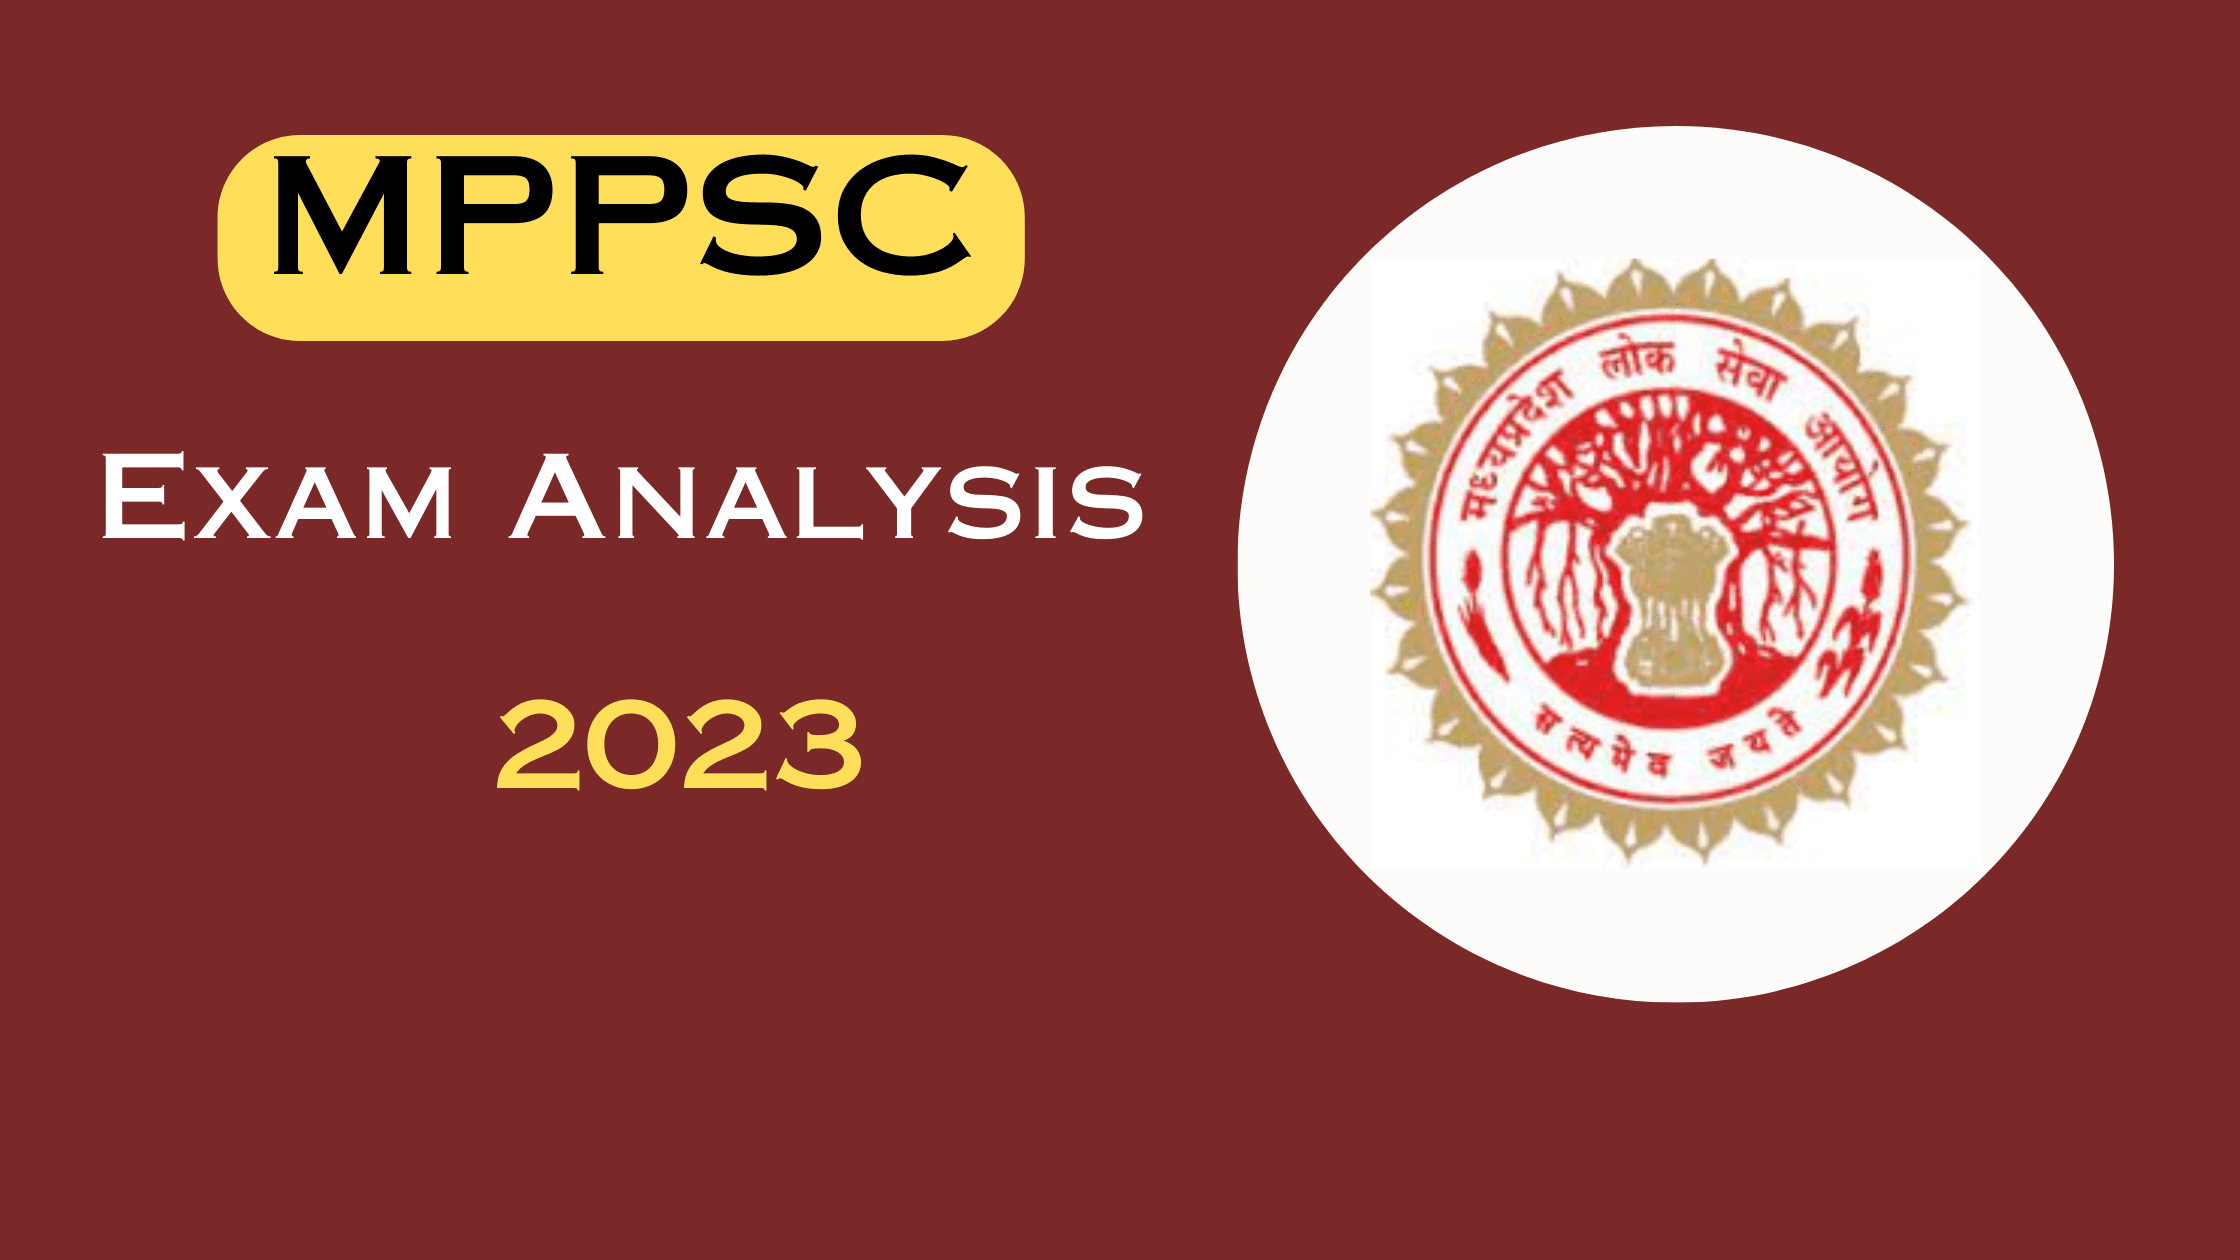 MPPSC Exam Analysis 2023